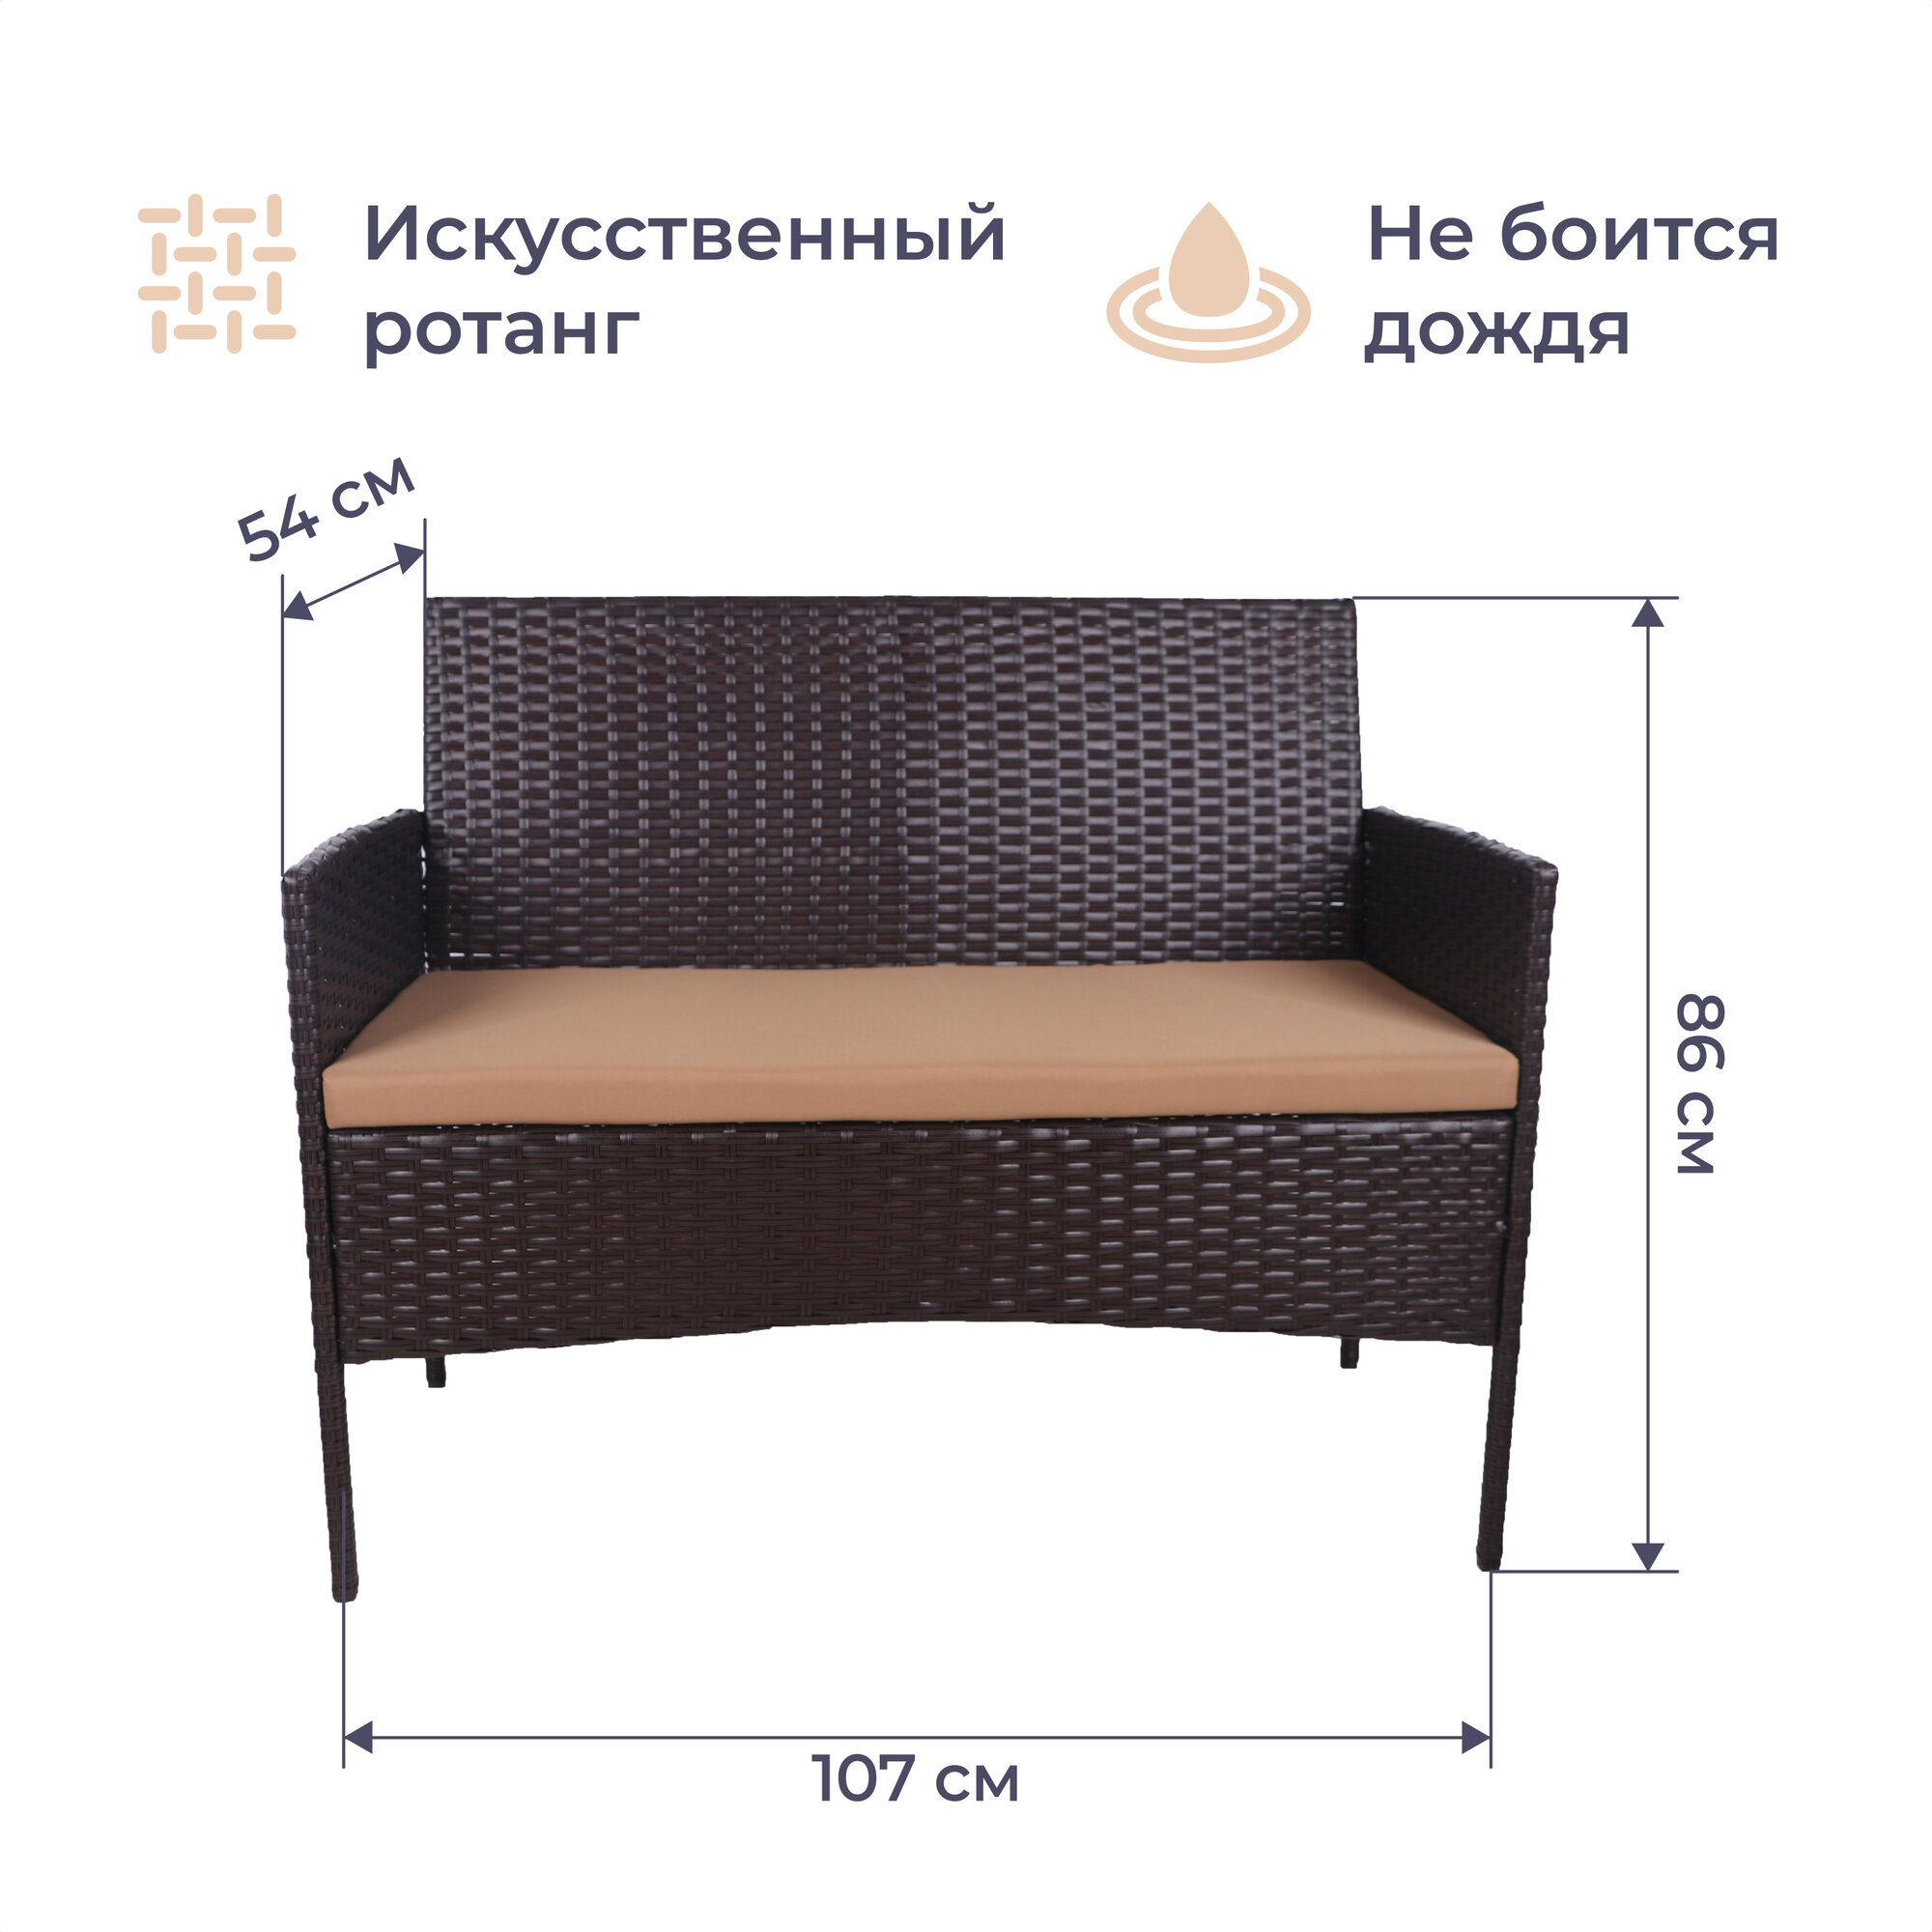 Комплект мебели Homsly, искусственный ротанг, диван, 2 кресла, стол, стальной каркас, цвет "Кофе", LFSR 211